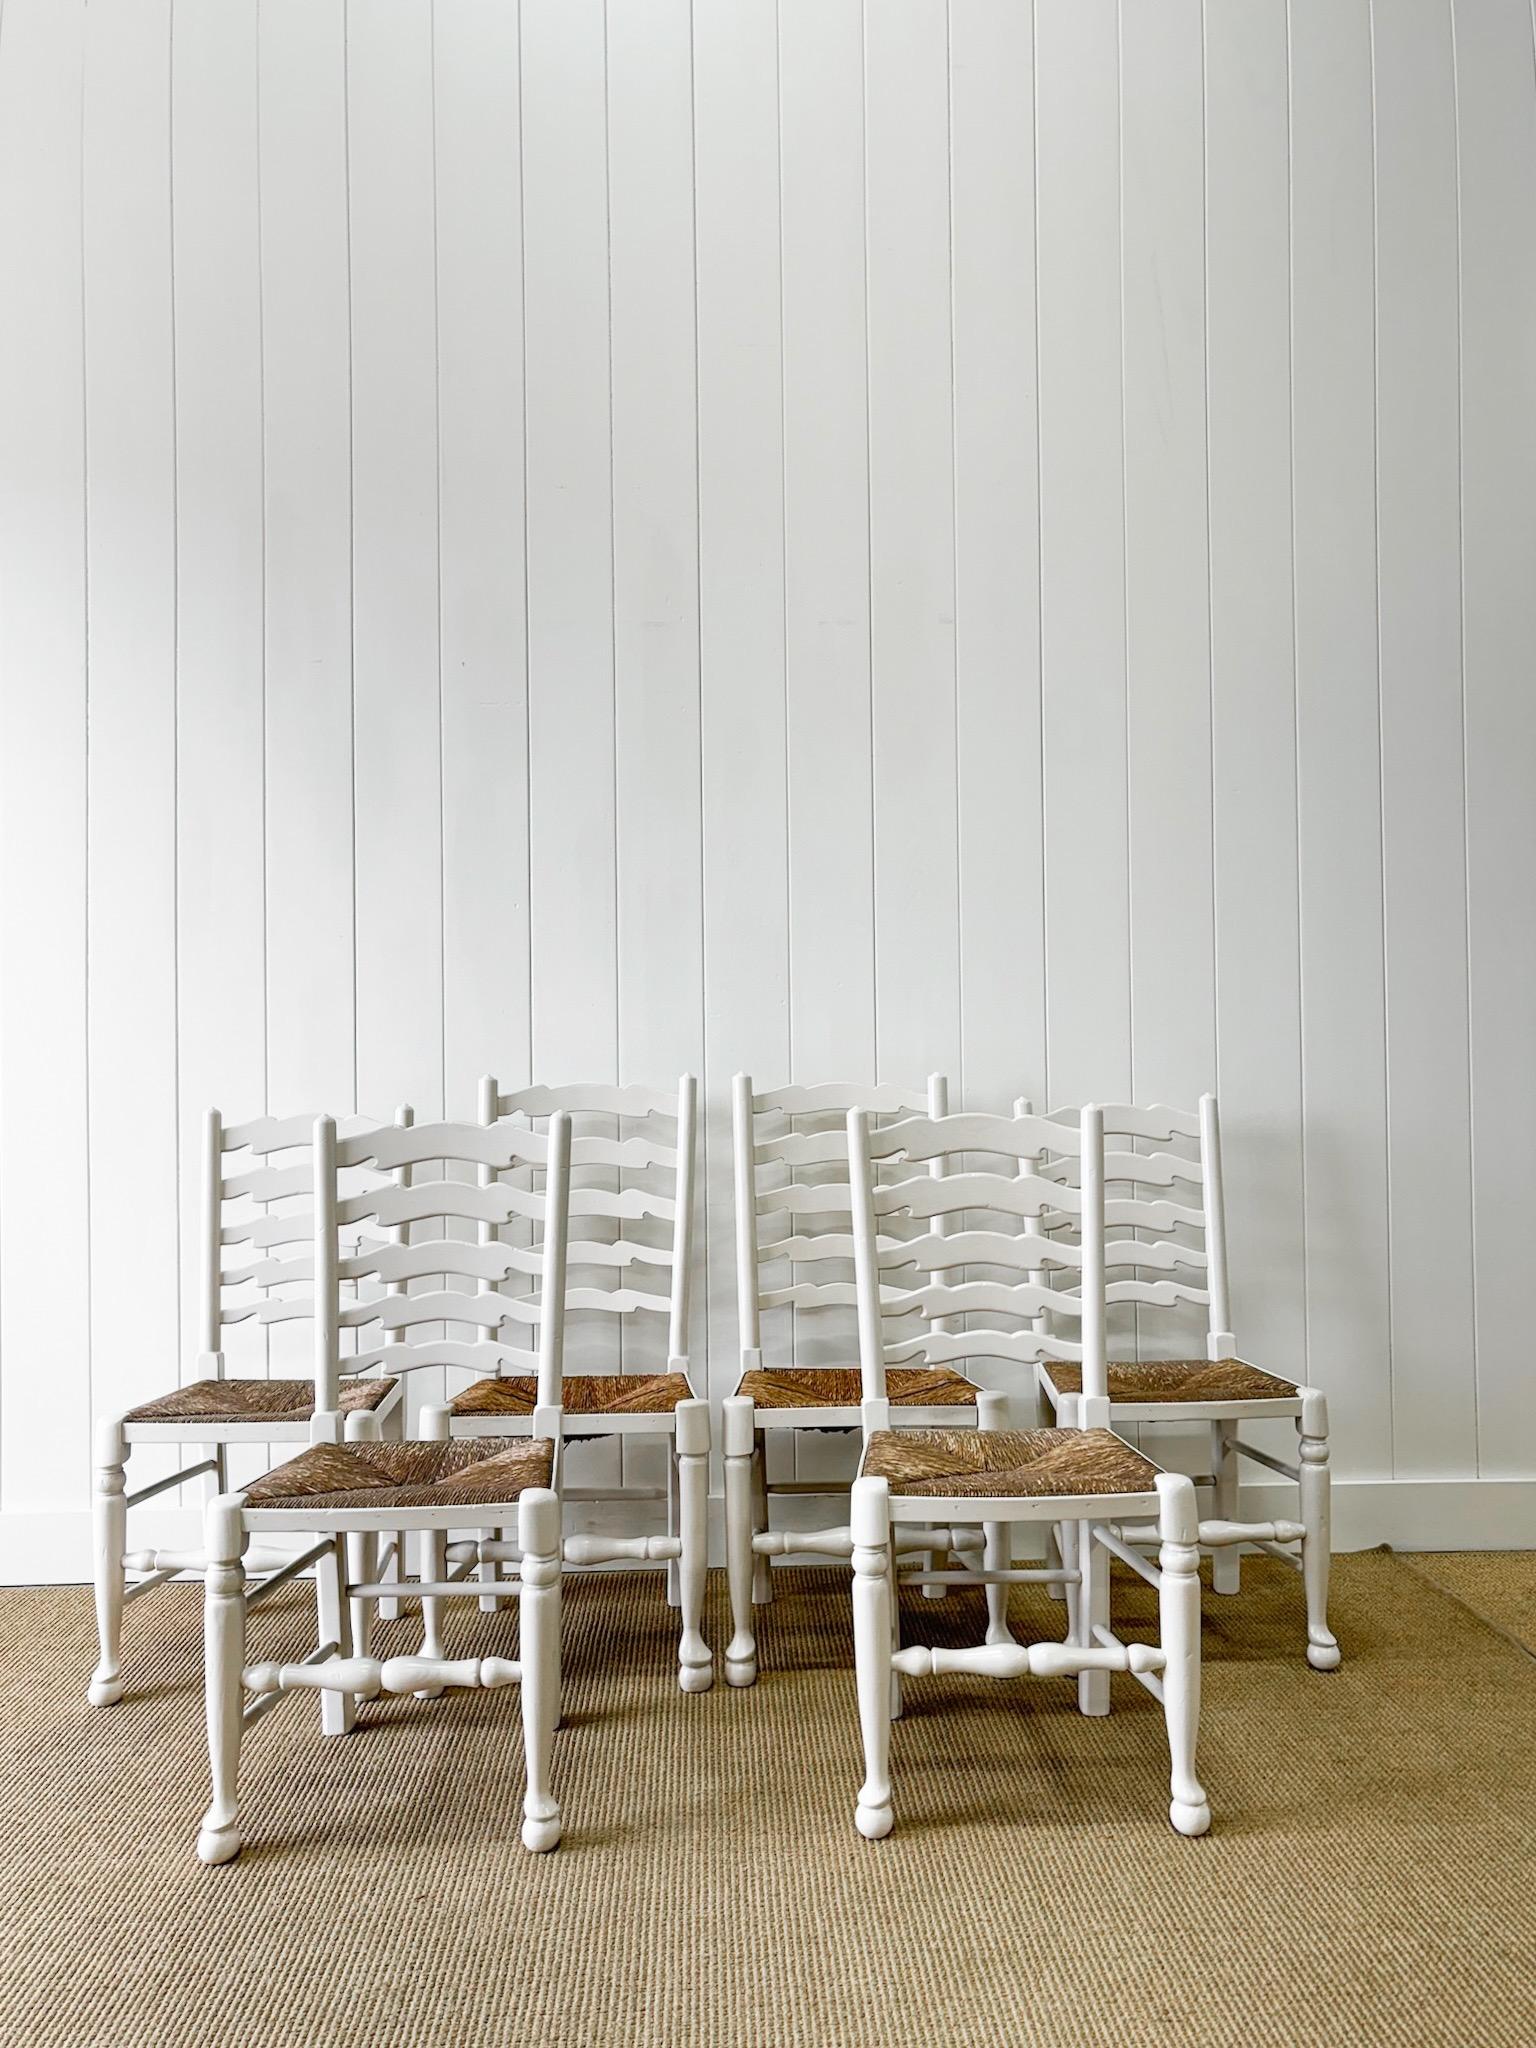 Ein hübscher Satz von sechs weiß lackierten englischen Leiterrückenstühlen mit schönen warmen Binsen-Sitzen. Zwei Stühle sind 